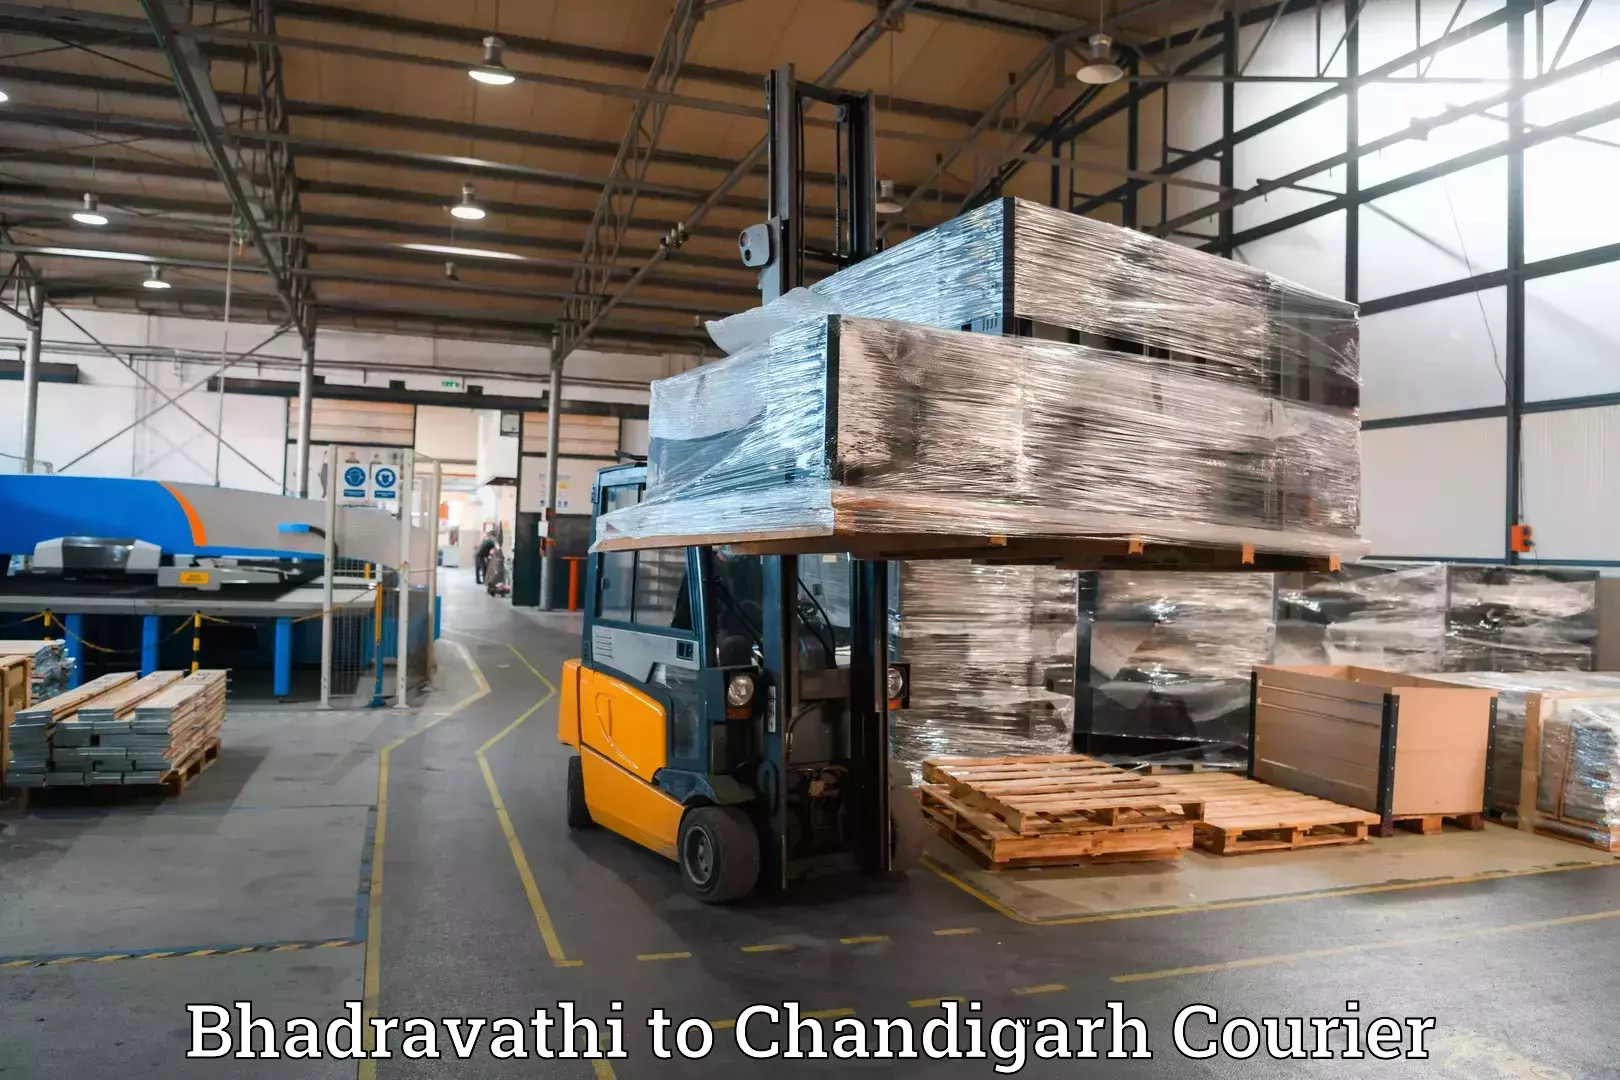 Luggage shipment specialists Bhadravathi to Kharar